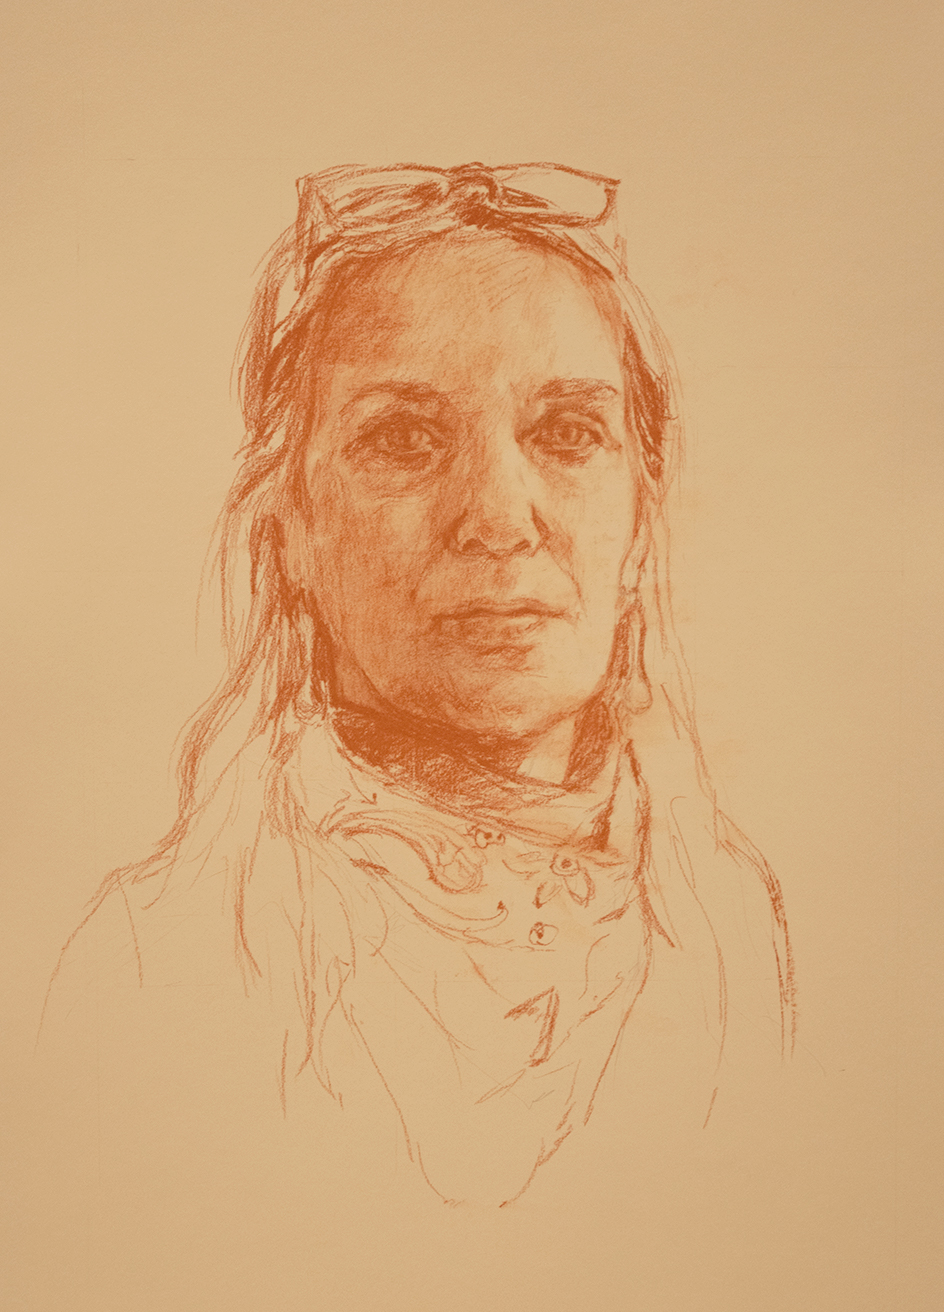 A self-portrait drawn by Marilyn Borglum